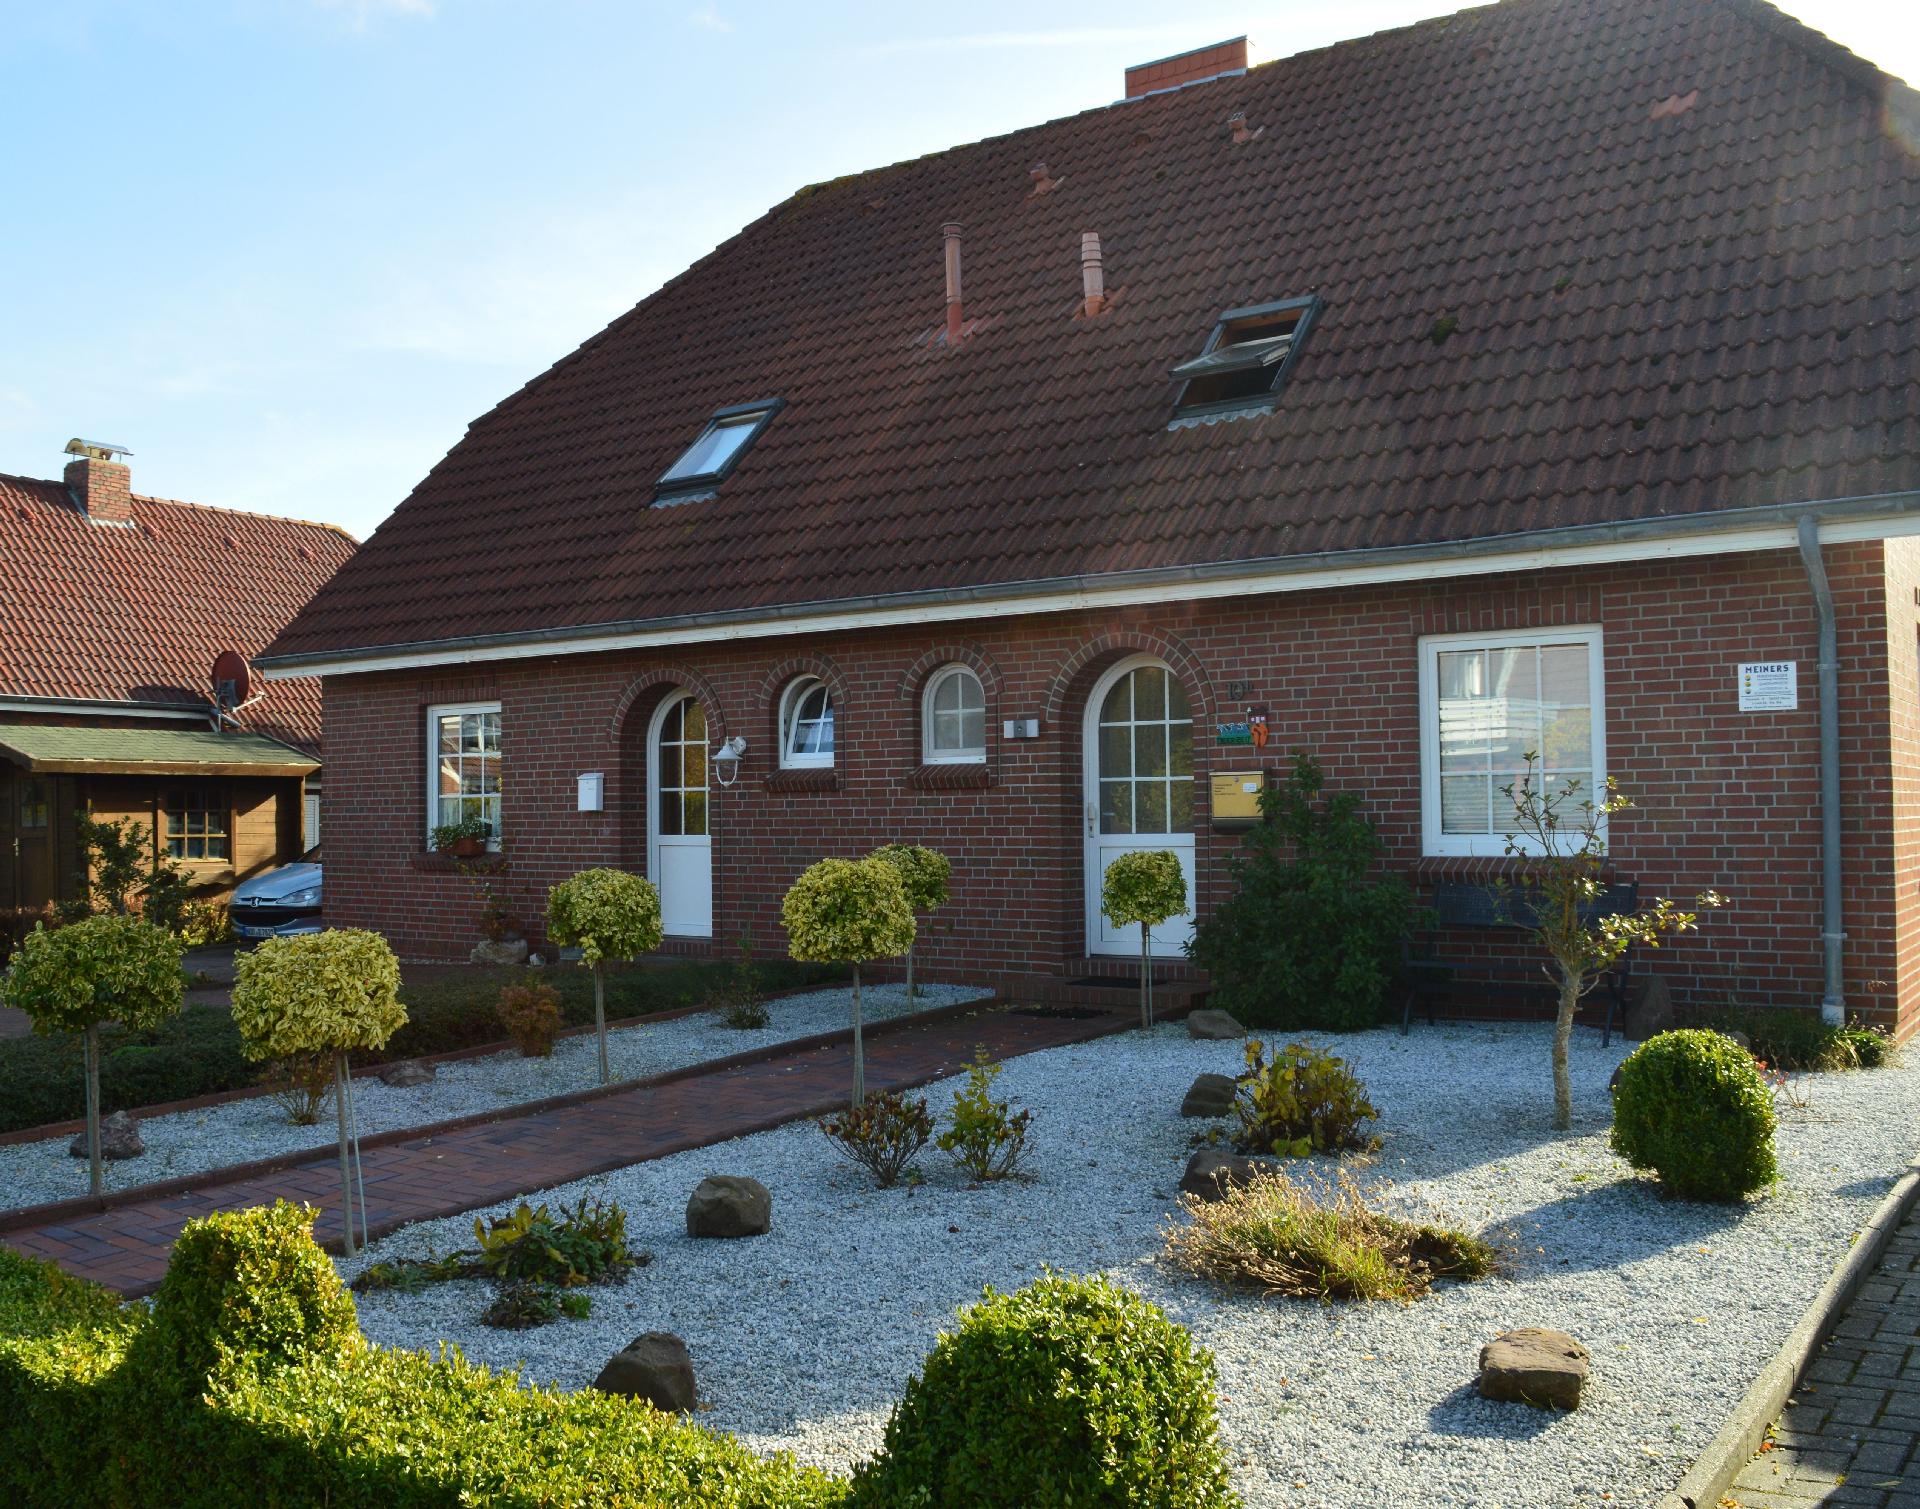  Ferienhaus mit Terrasse, Garten und Fahrradnutzun Ferienhaus  Aurich